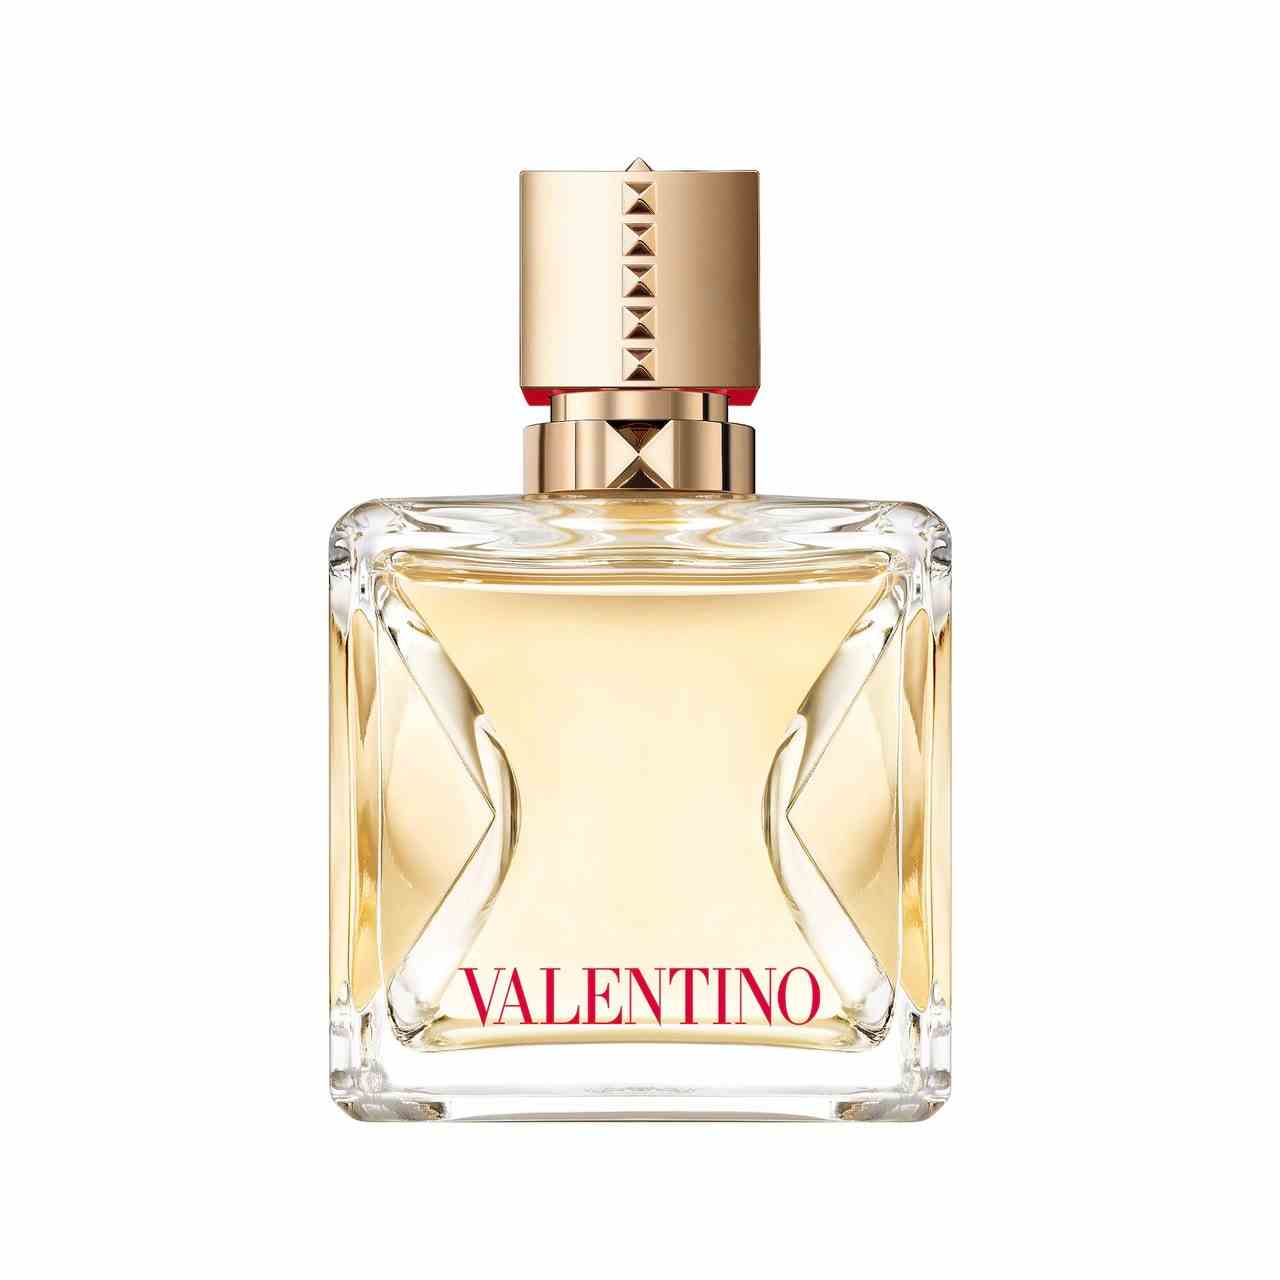 Valentino Voce Viva Eau de Parfum Goldparfüm in Kristallflasche auf weißem Hintergrund